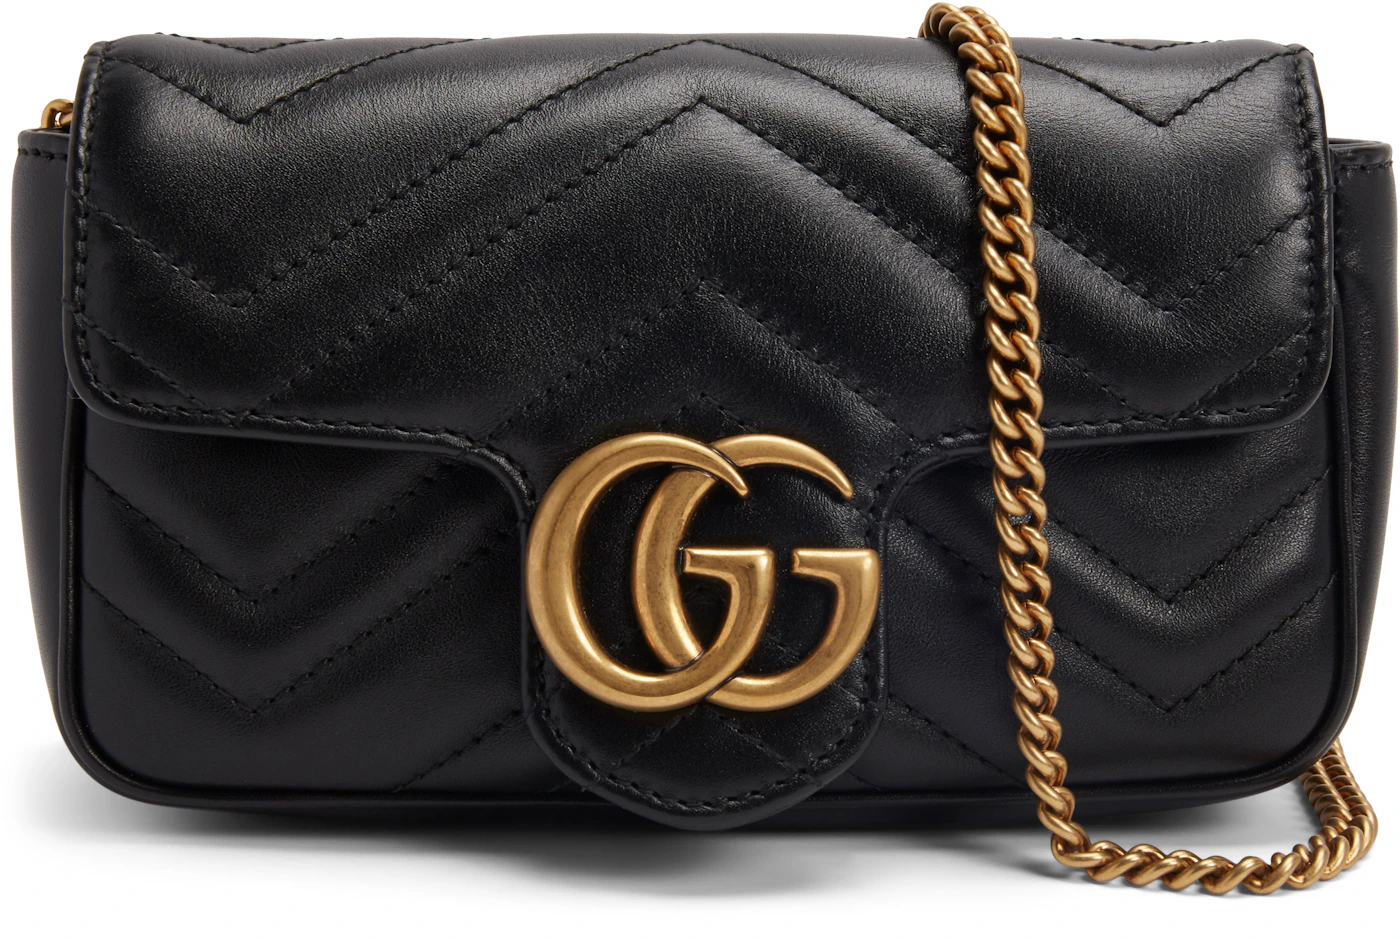 Gucci GG Marmont Matelassé Chain Mini Bag in Black